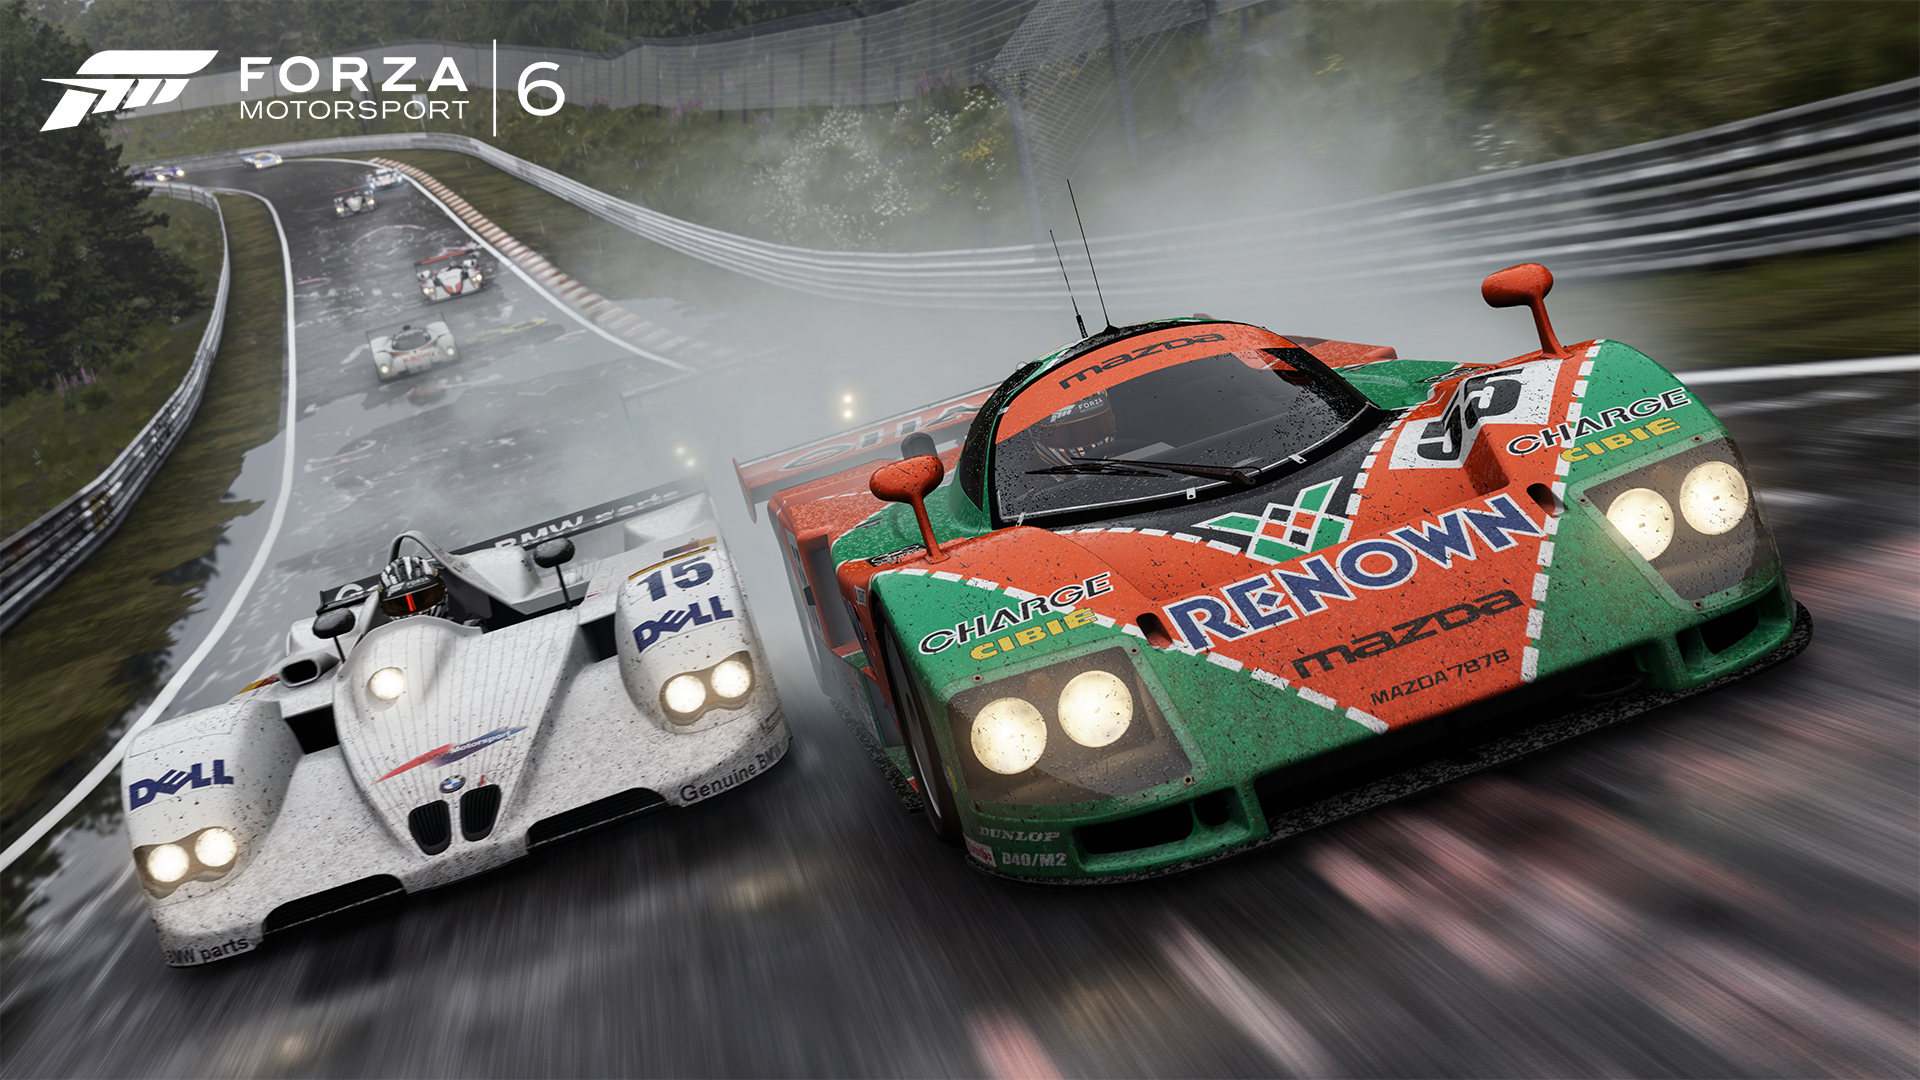 Descarga gratuita de fondo de pantalla para móvil de Forza Motorsport 6, Fuerza, Videojuego.